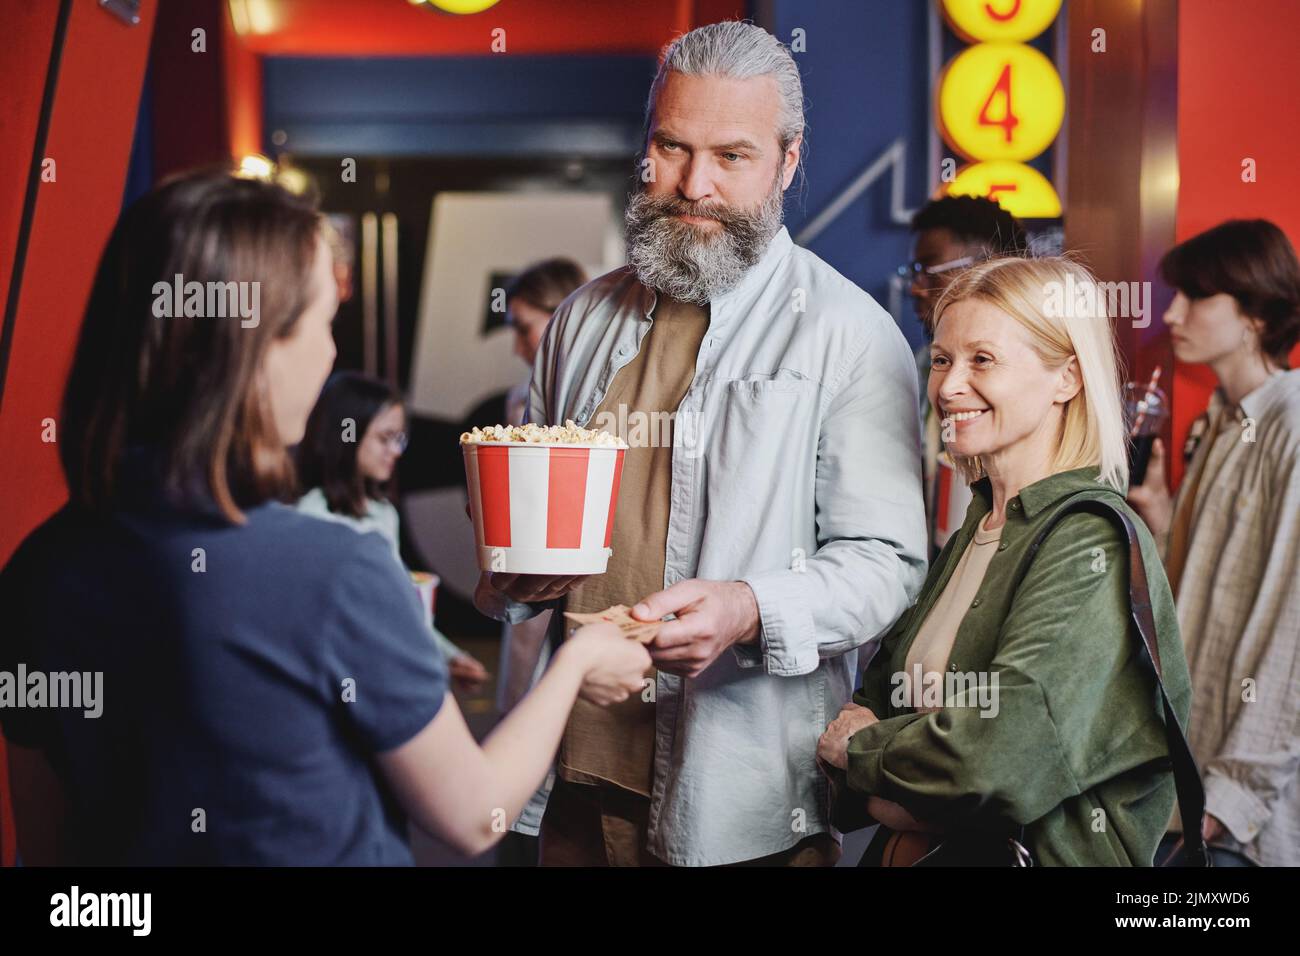 Una pareja adulta moderna que pasa sus entradas para la película a una joven trabajadora del cine Foto de stock